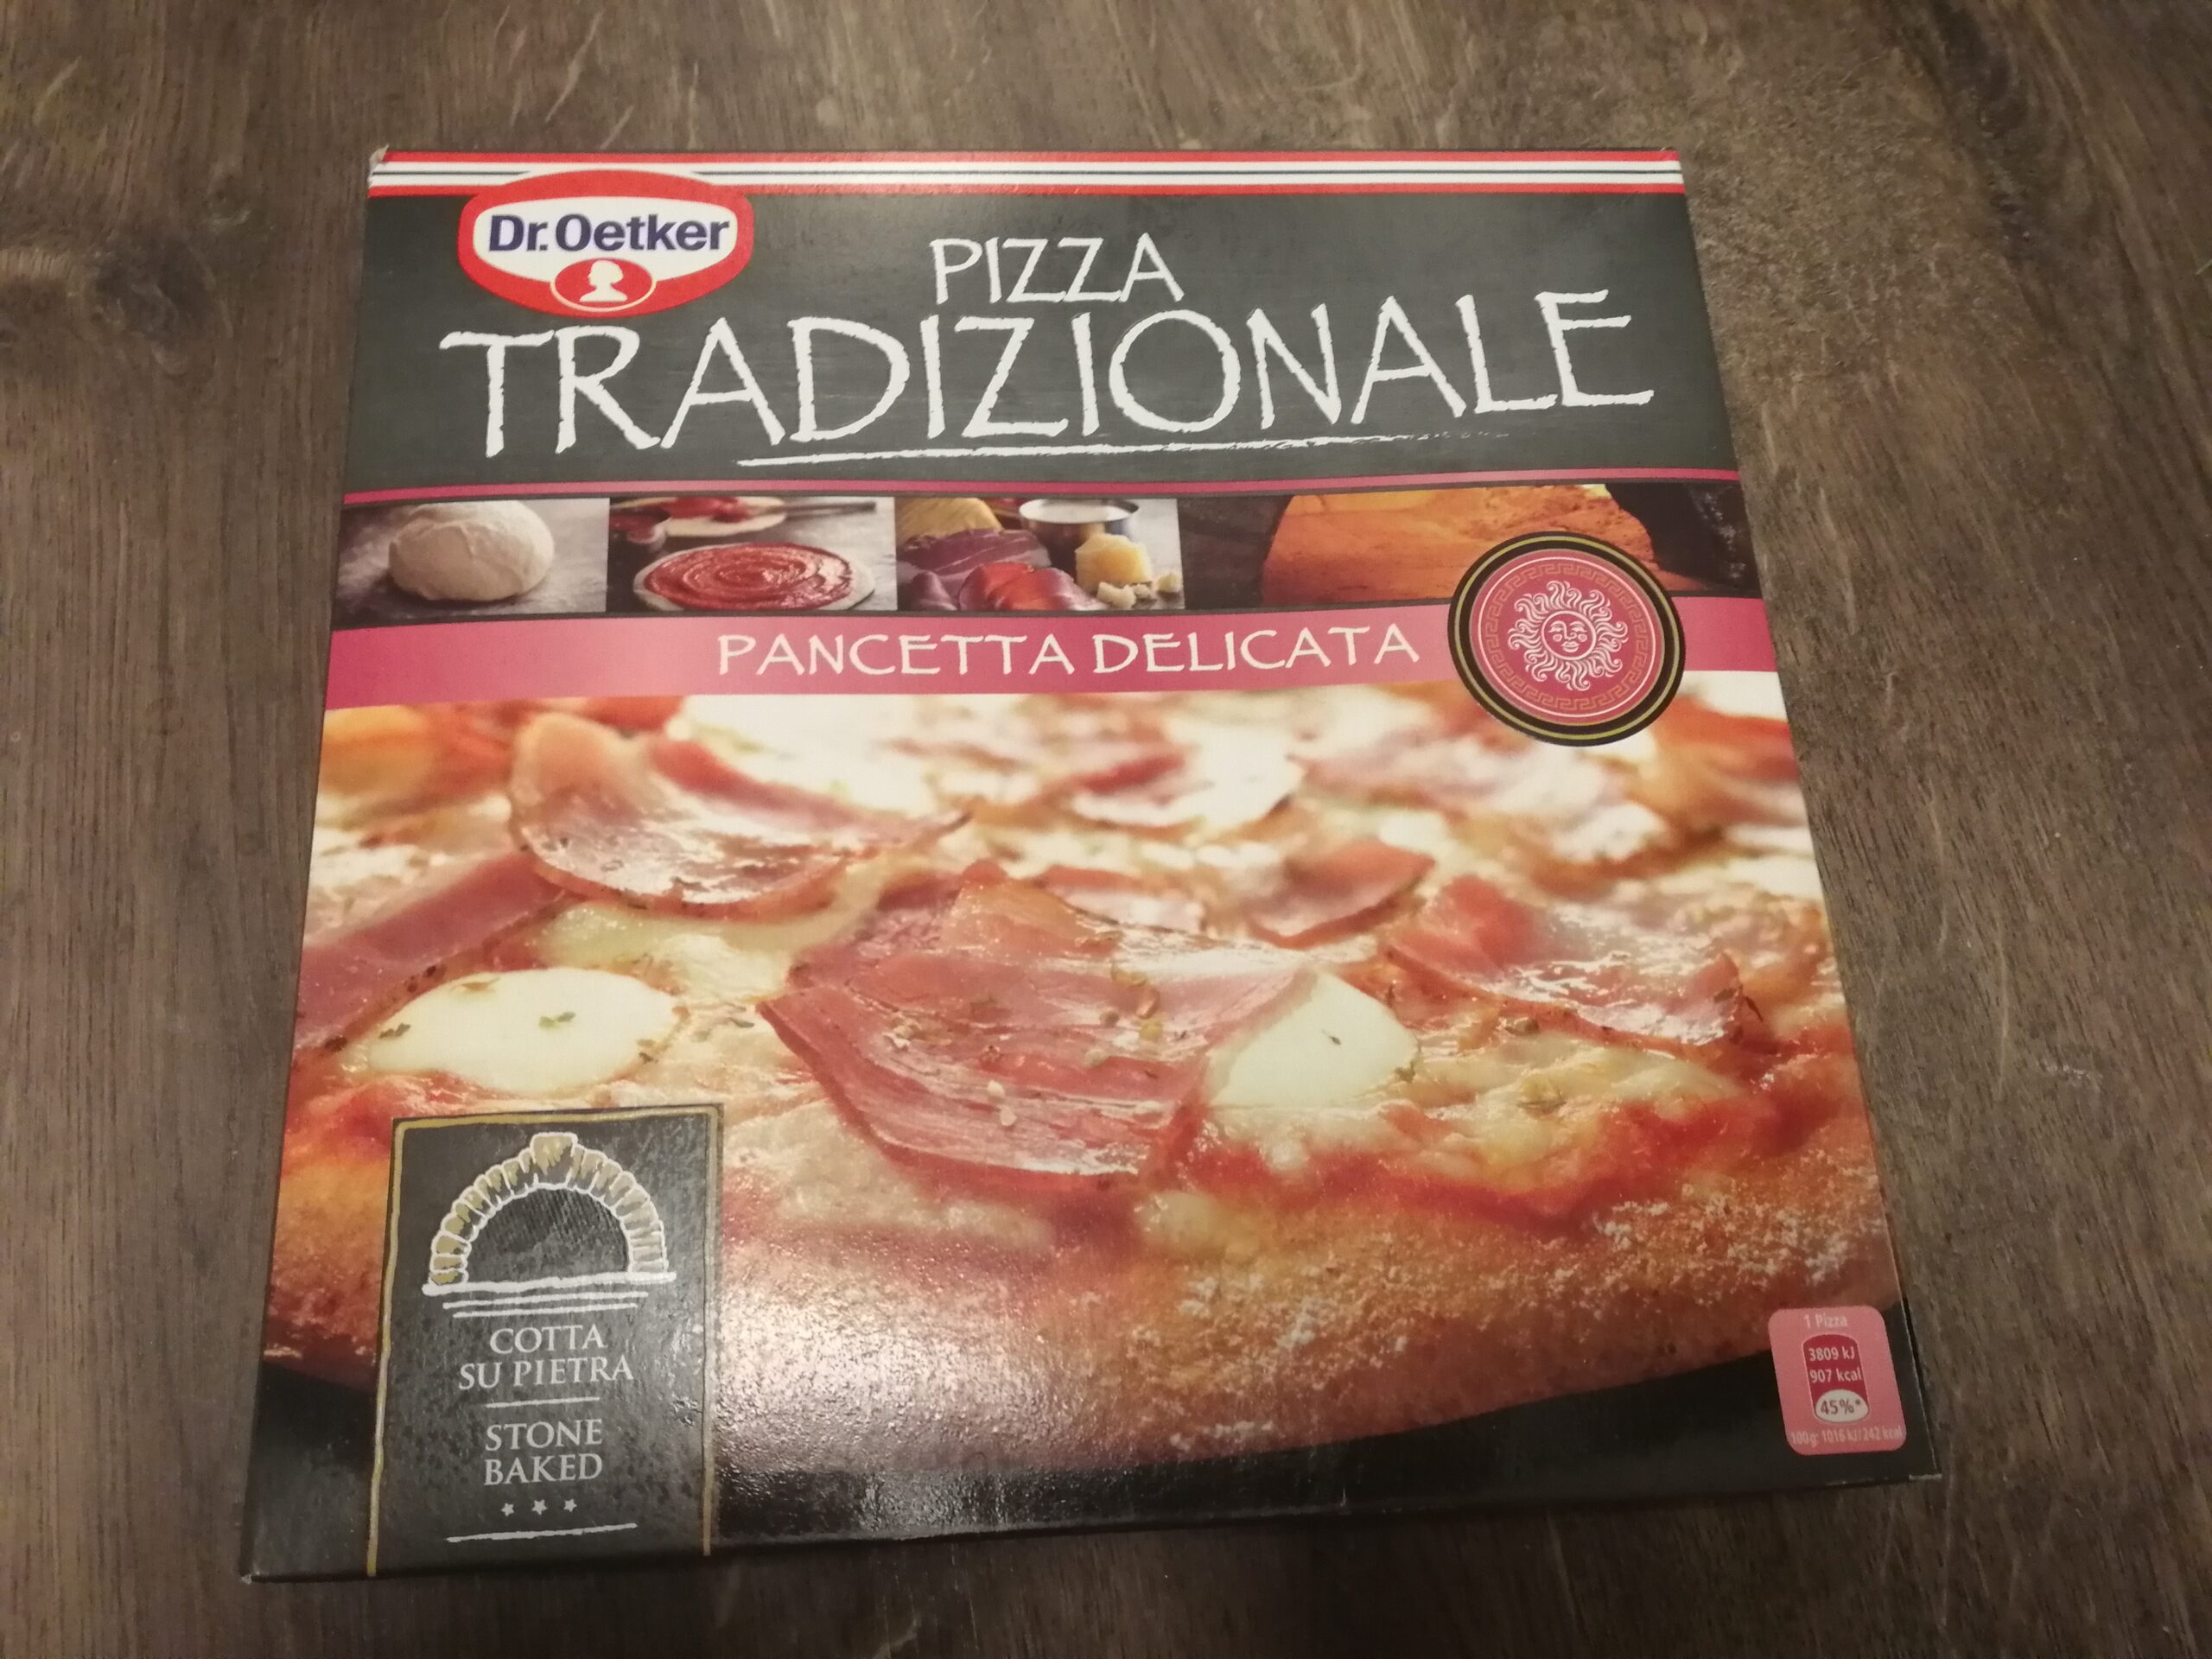 Pizza Tradizionale Pancetta Delicata fra Dr. Oetker